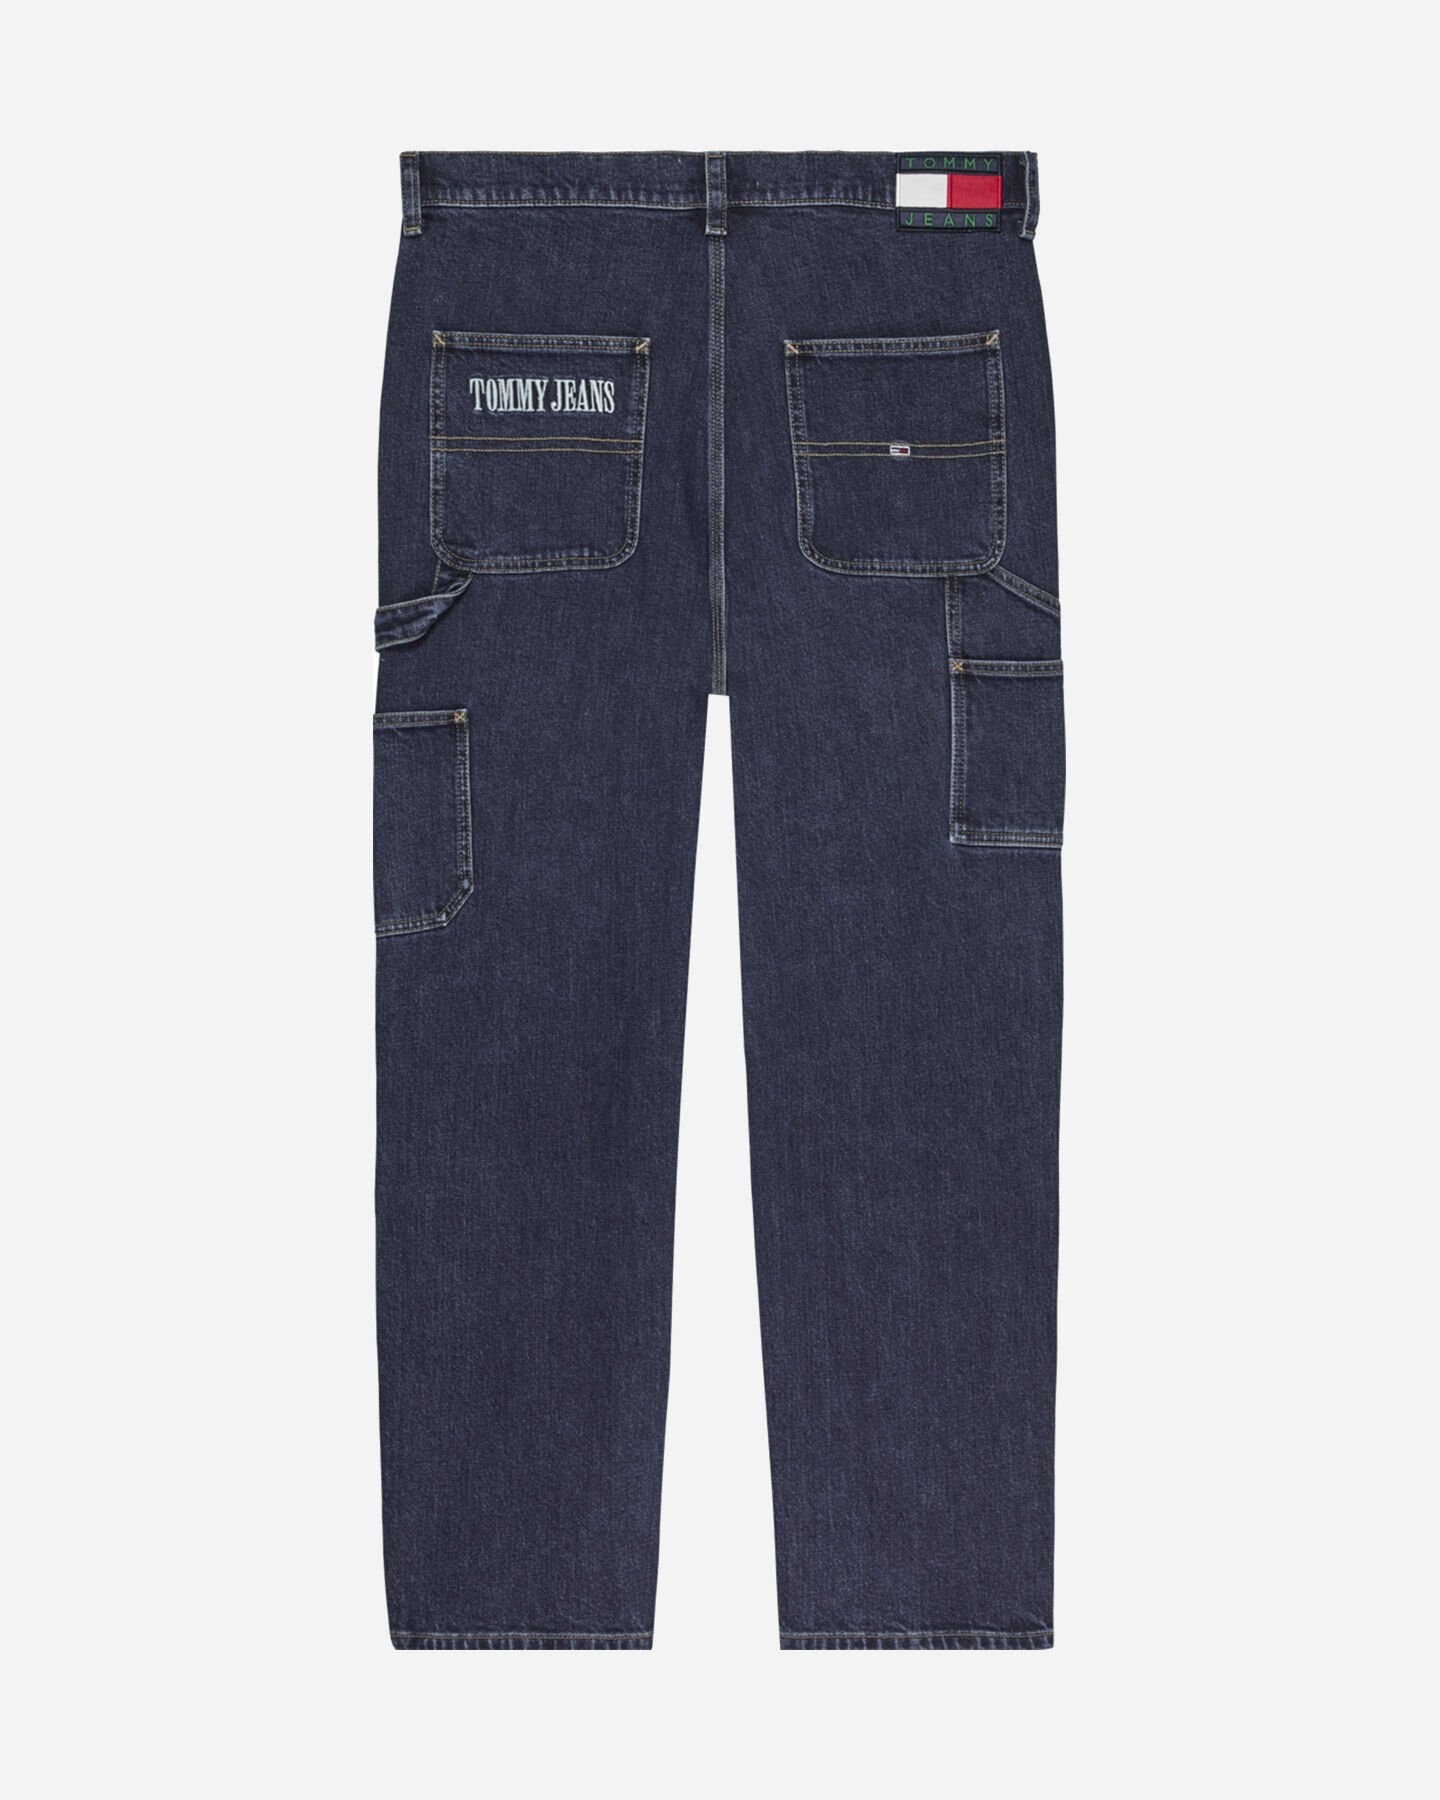  Jeans TOMMY HILFIGER SKATER CARPENTER M S4115256|1BK|30 scatto 1